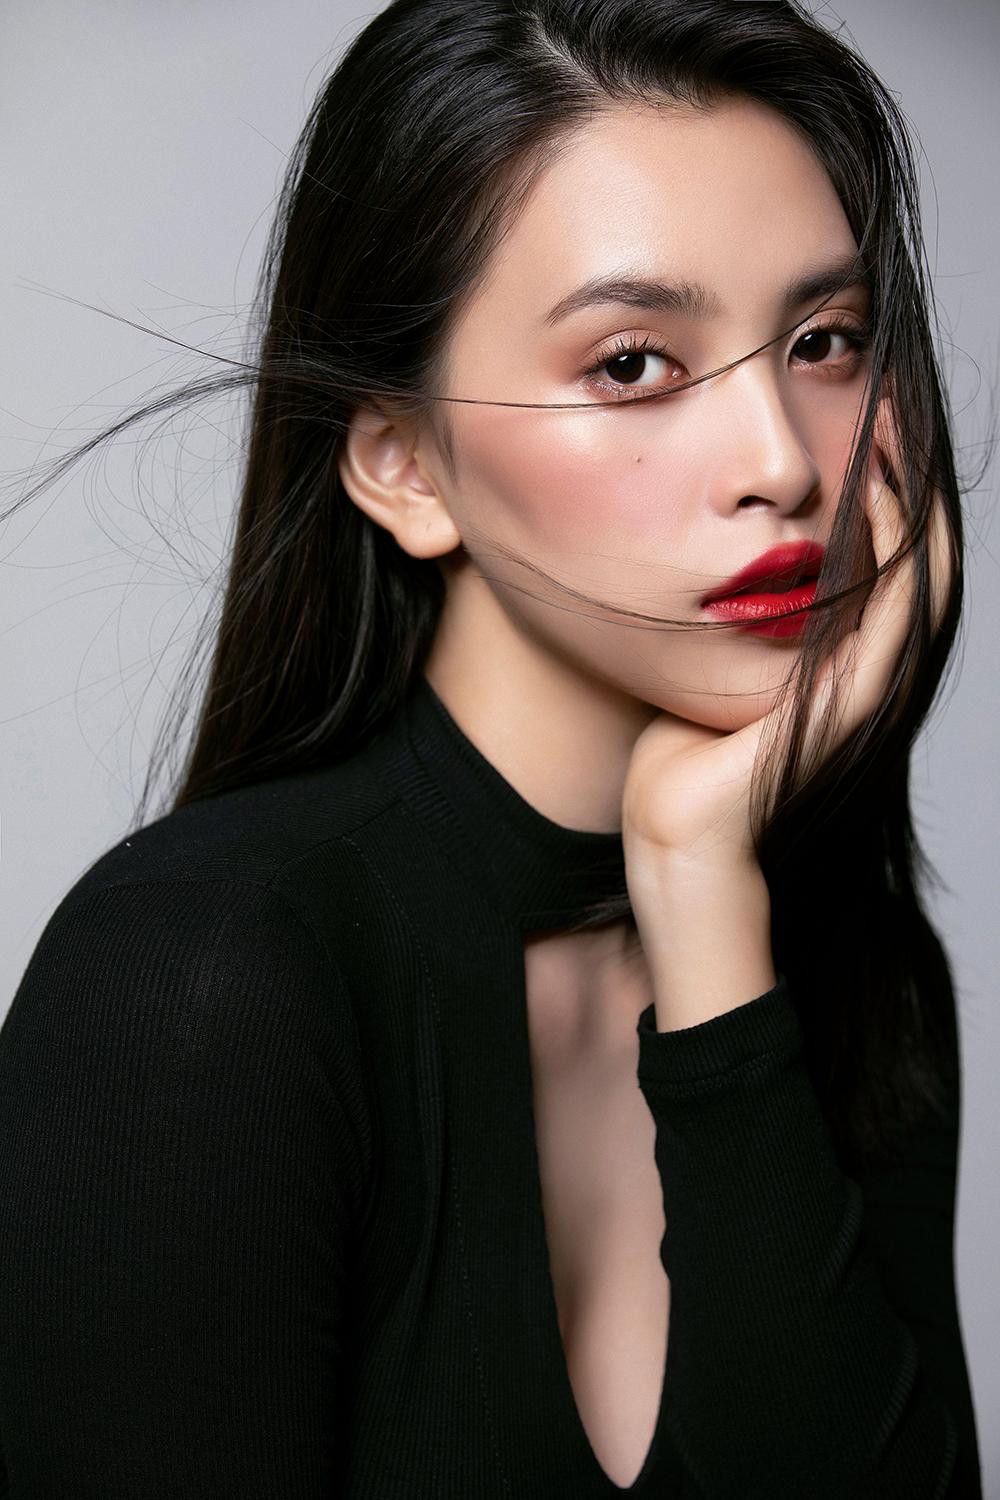 Trang điểm trong veo, Hoa hậu Tiểu Vy vẫn đẹp hút hồn với gương mặt đạt 'tỷ lệ vàng' - Ảnh 11.